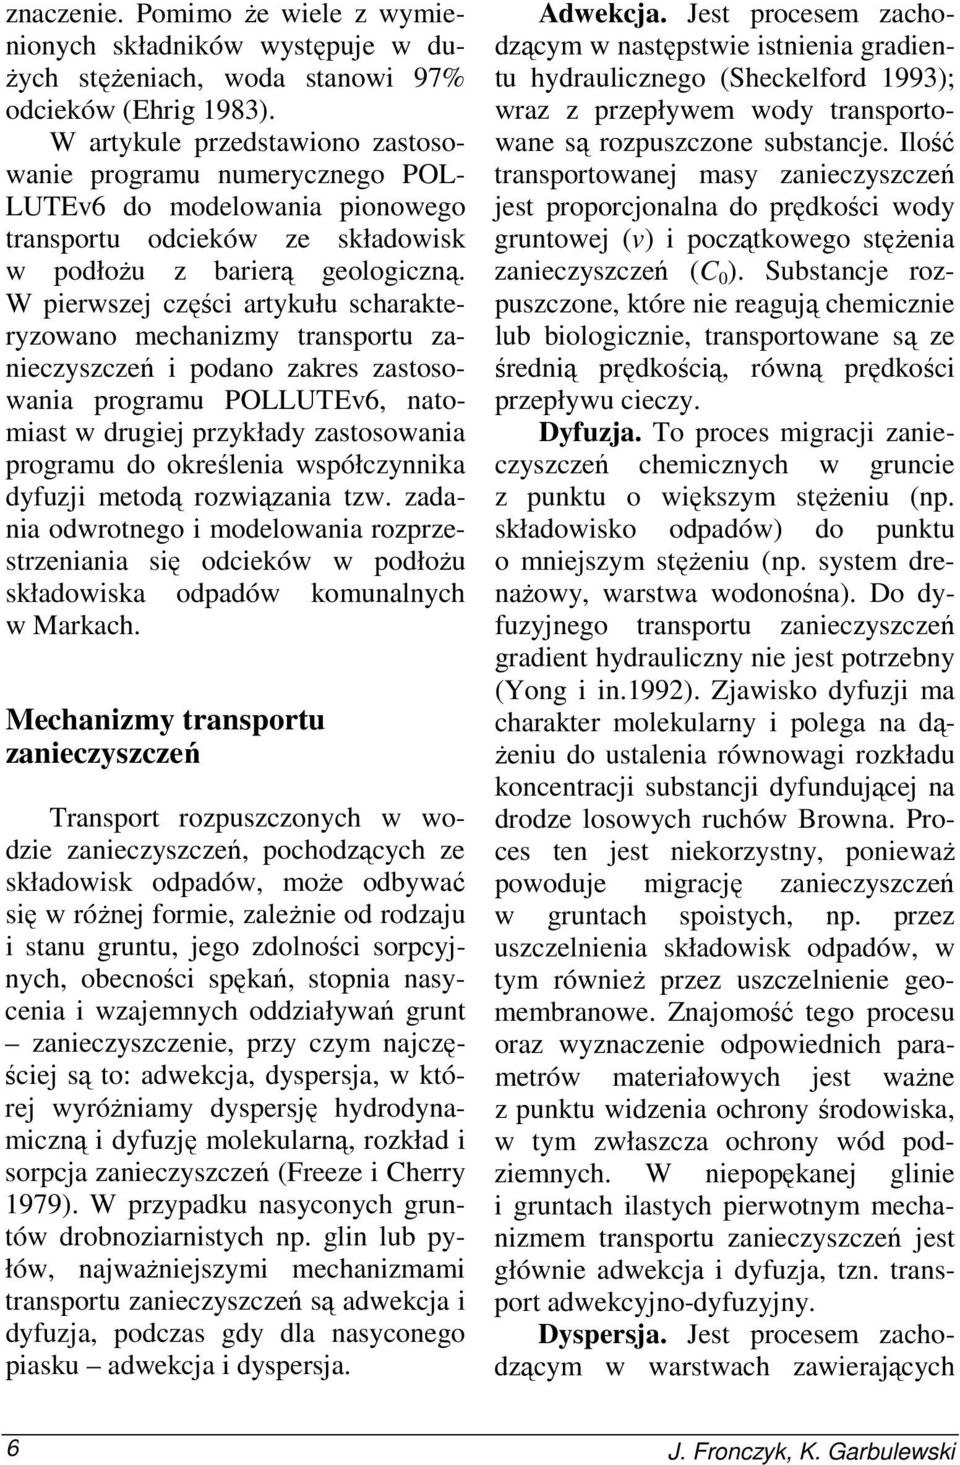 W pierwszej części artykułu scharakteryzowano mechanizmy transportu zanieczyszczeń i podano zakres zastosowania programu POLLUTEv6, natomiast w drugiej przykłady zastosowania programu do określenia